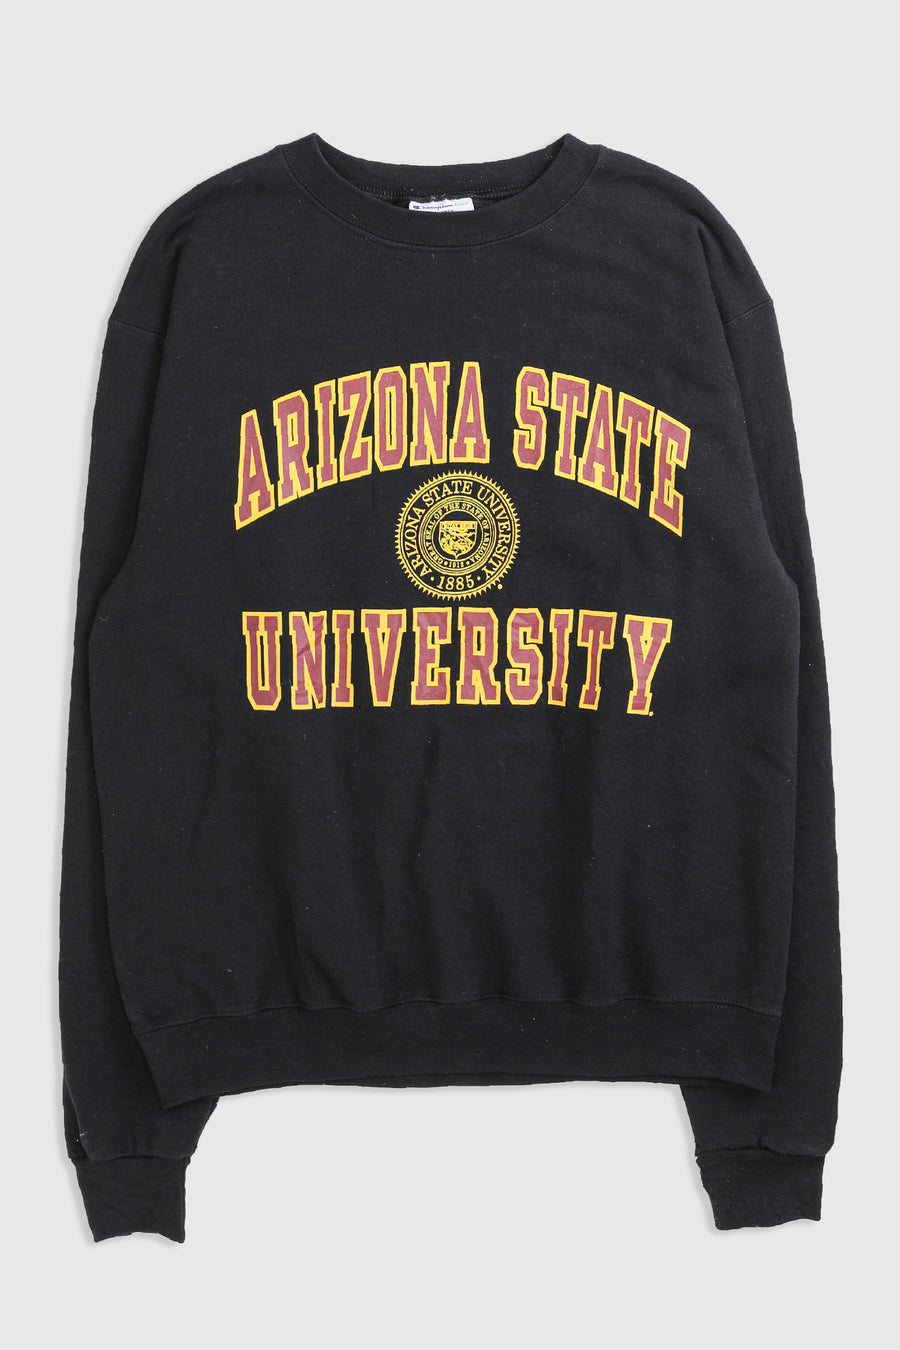 Vintage Arizona State Sweatshirt